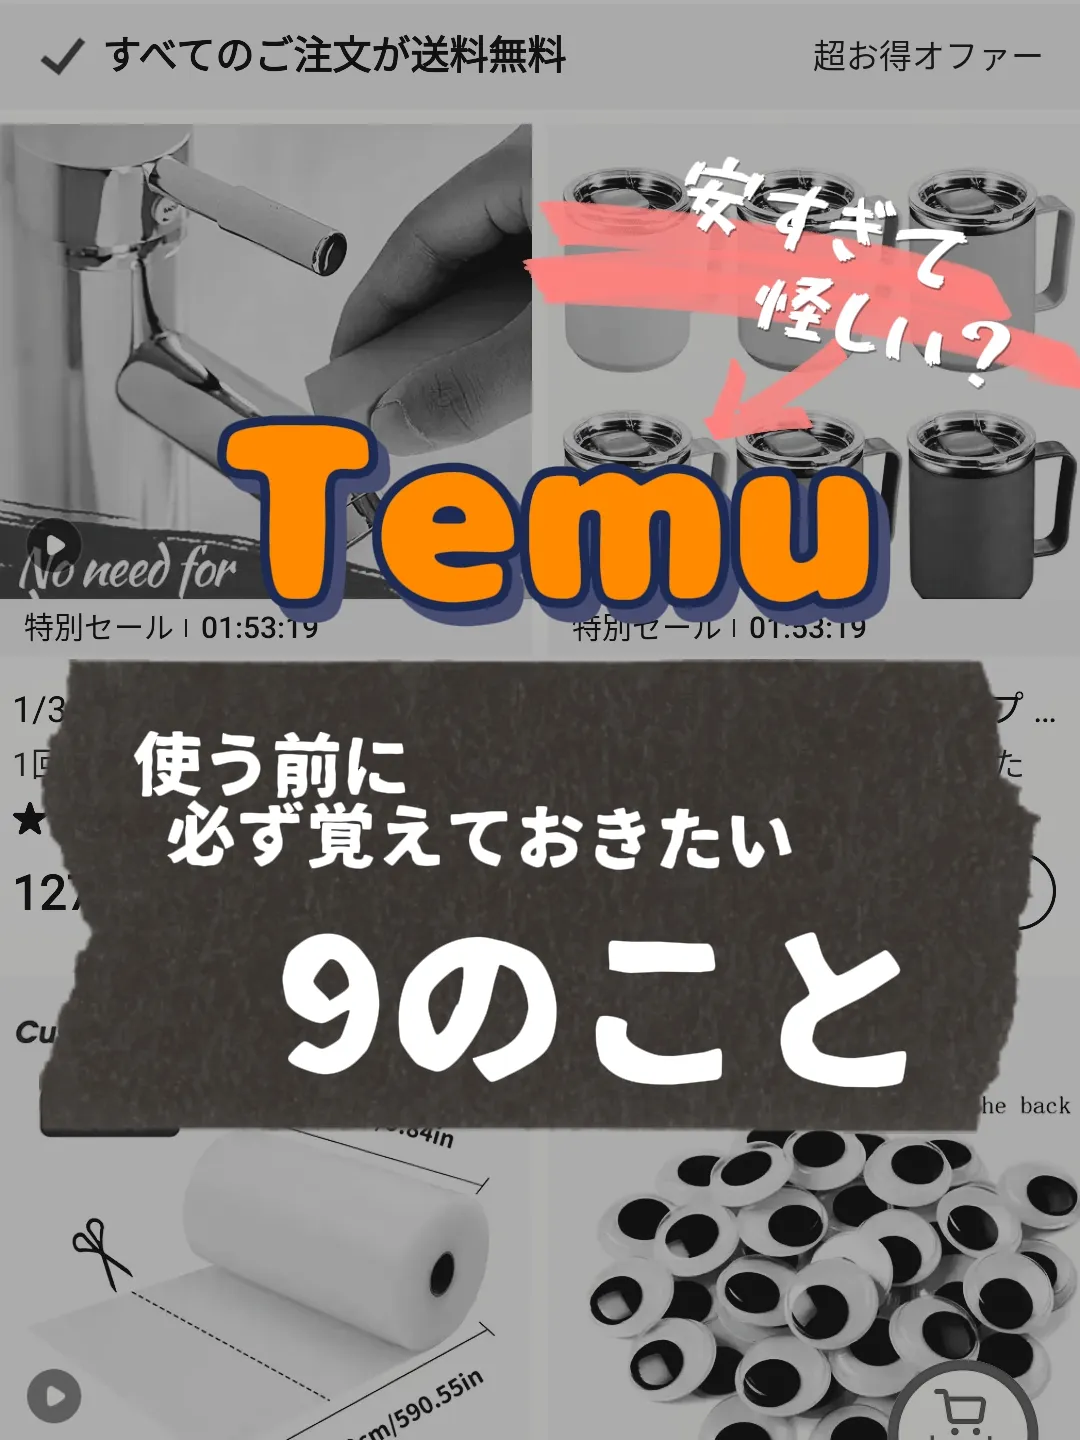 Temu アプリ 危険 - Lemon8検索